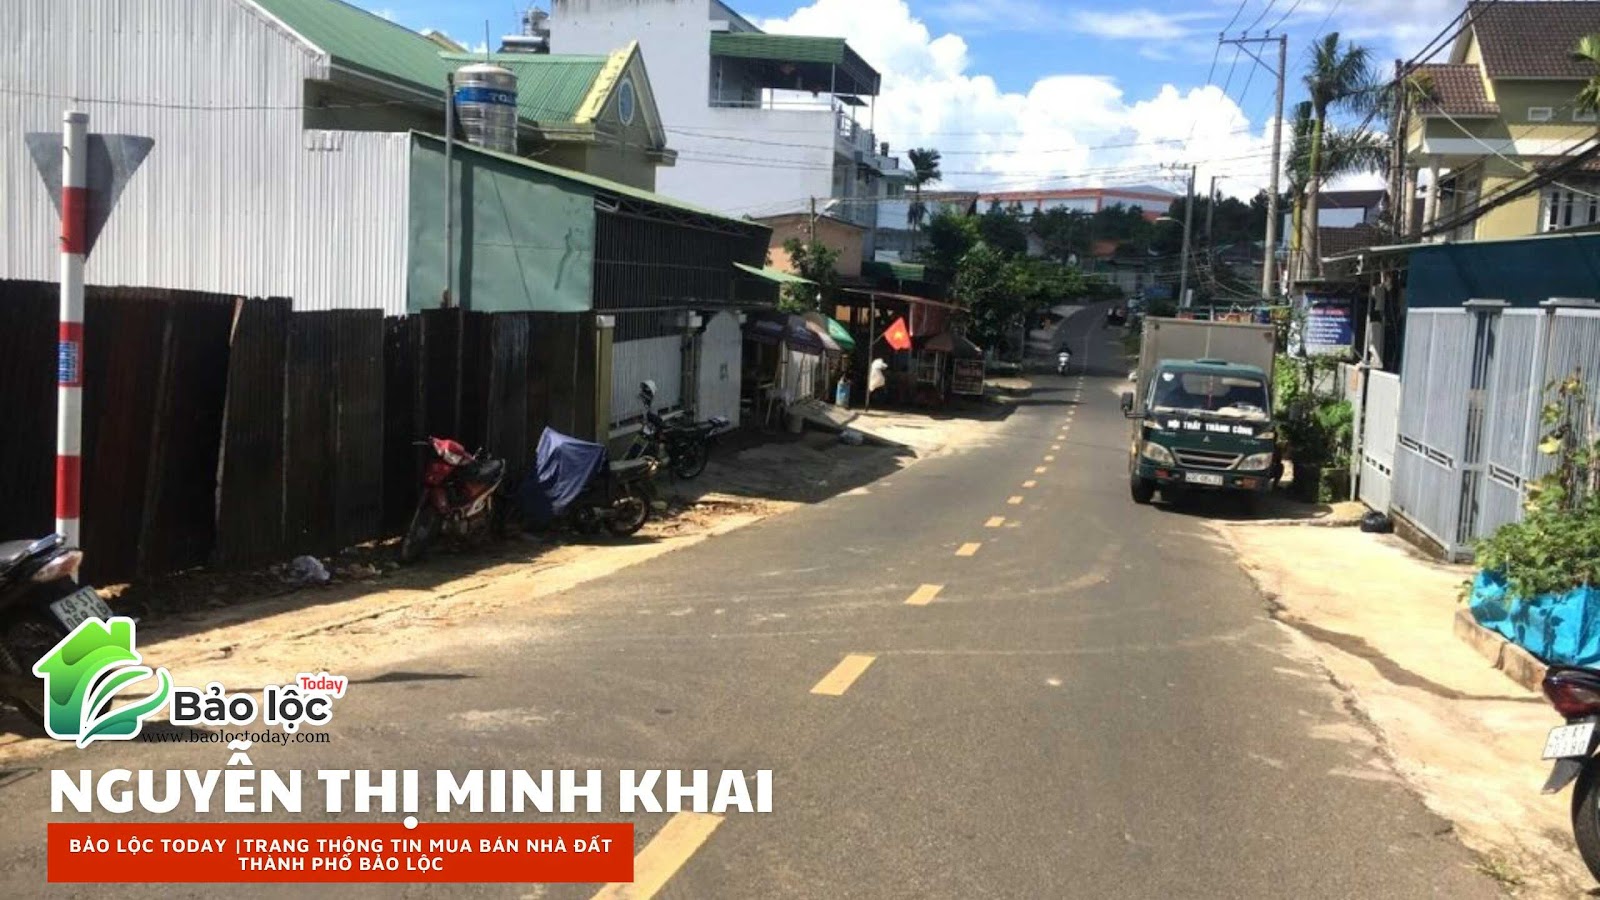 ảnh chụp tại đường Nguyễn Thị Minh Khai, phường Blao, thành phố Bảo Lộc